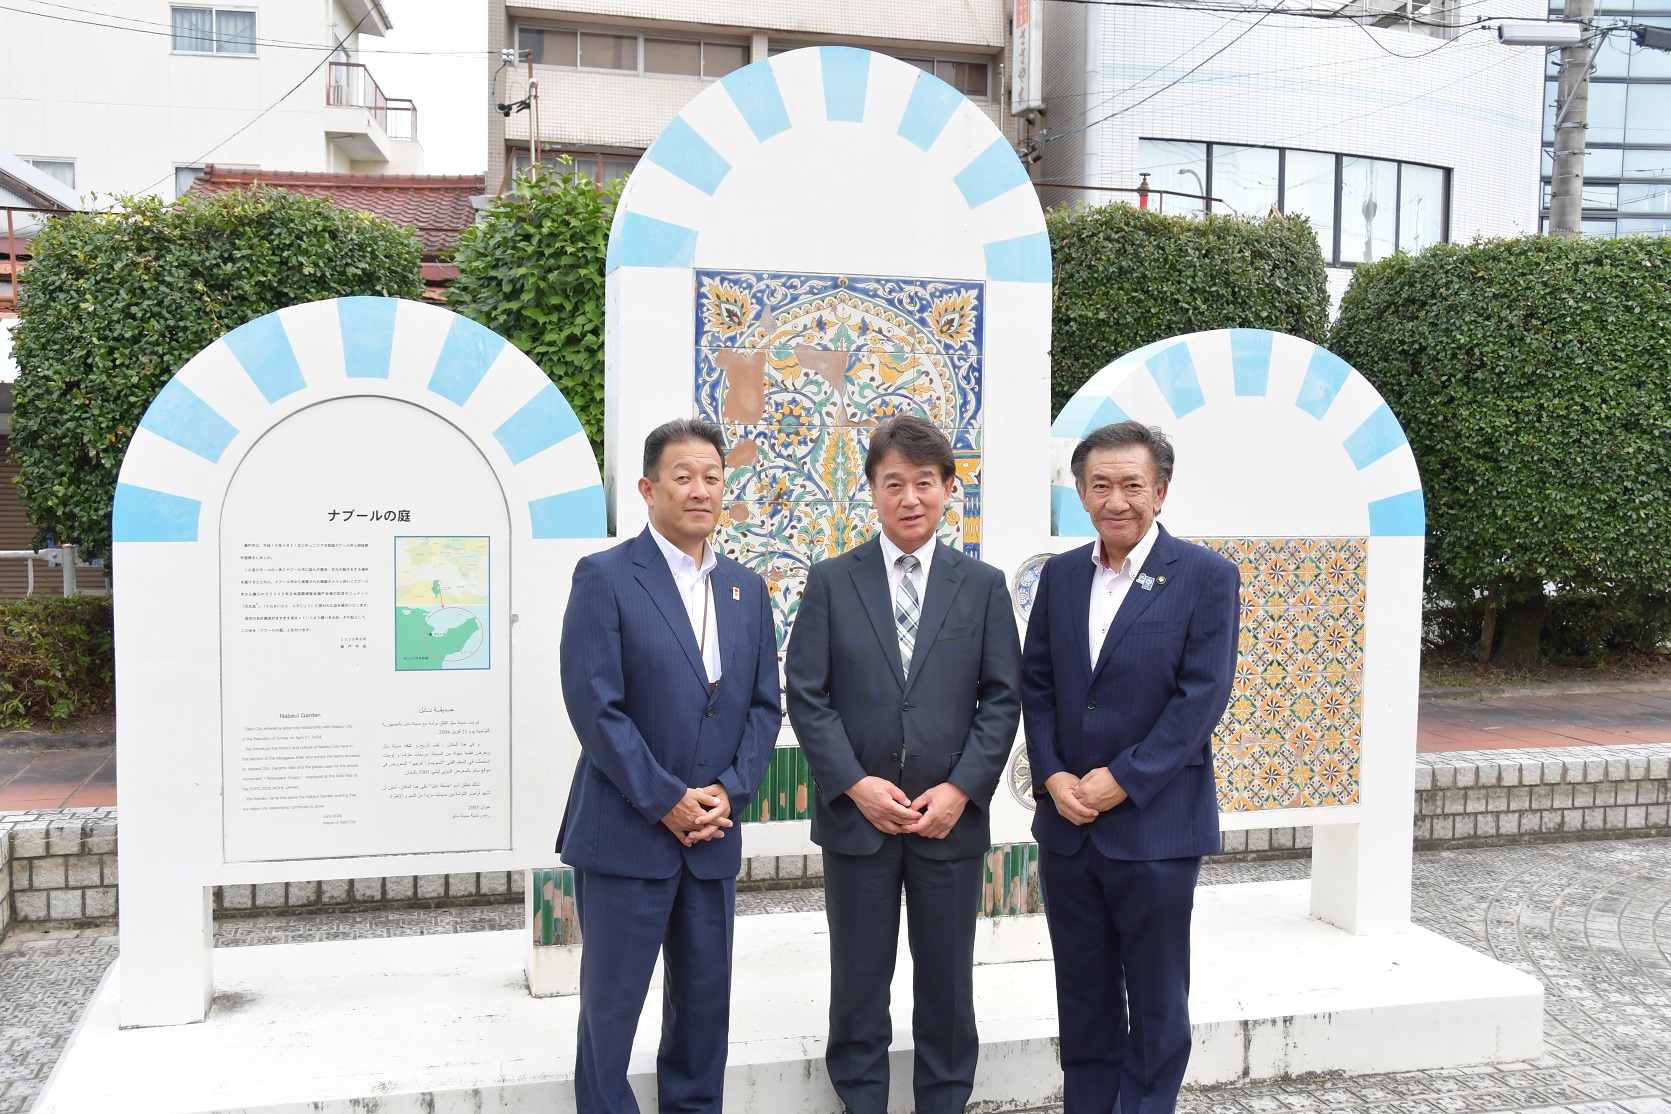 在チュニジア日本国大使と市長が名ナブールの庭で記念撮影